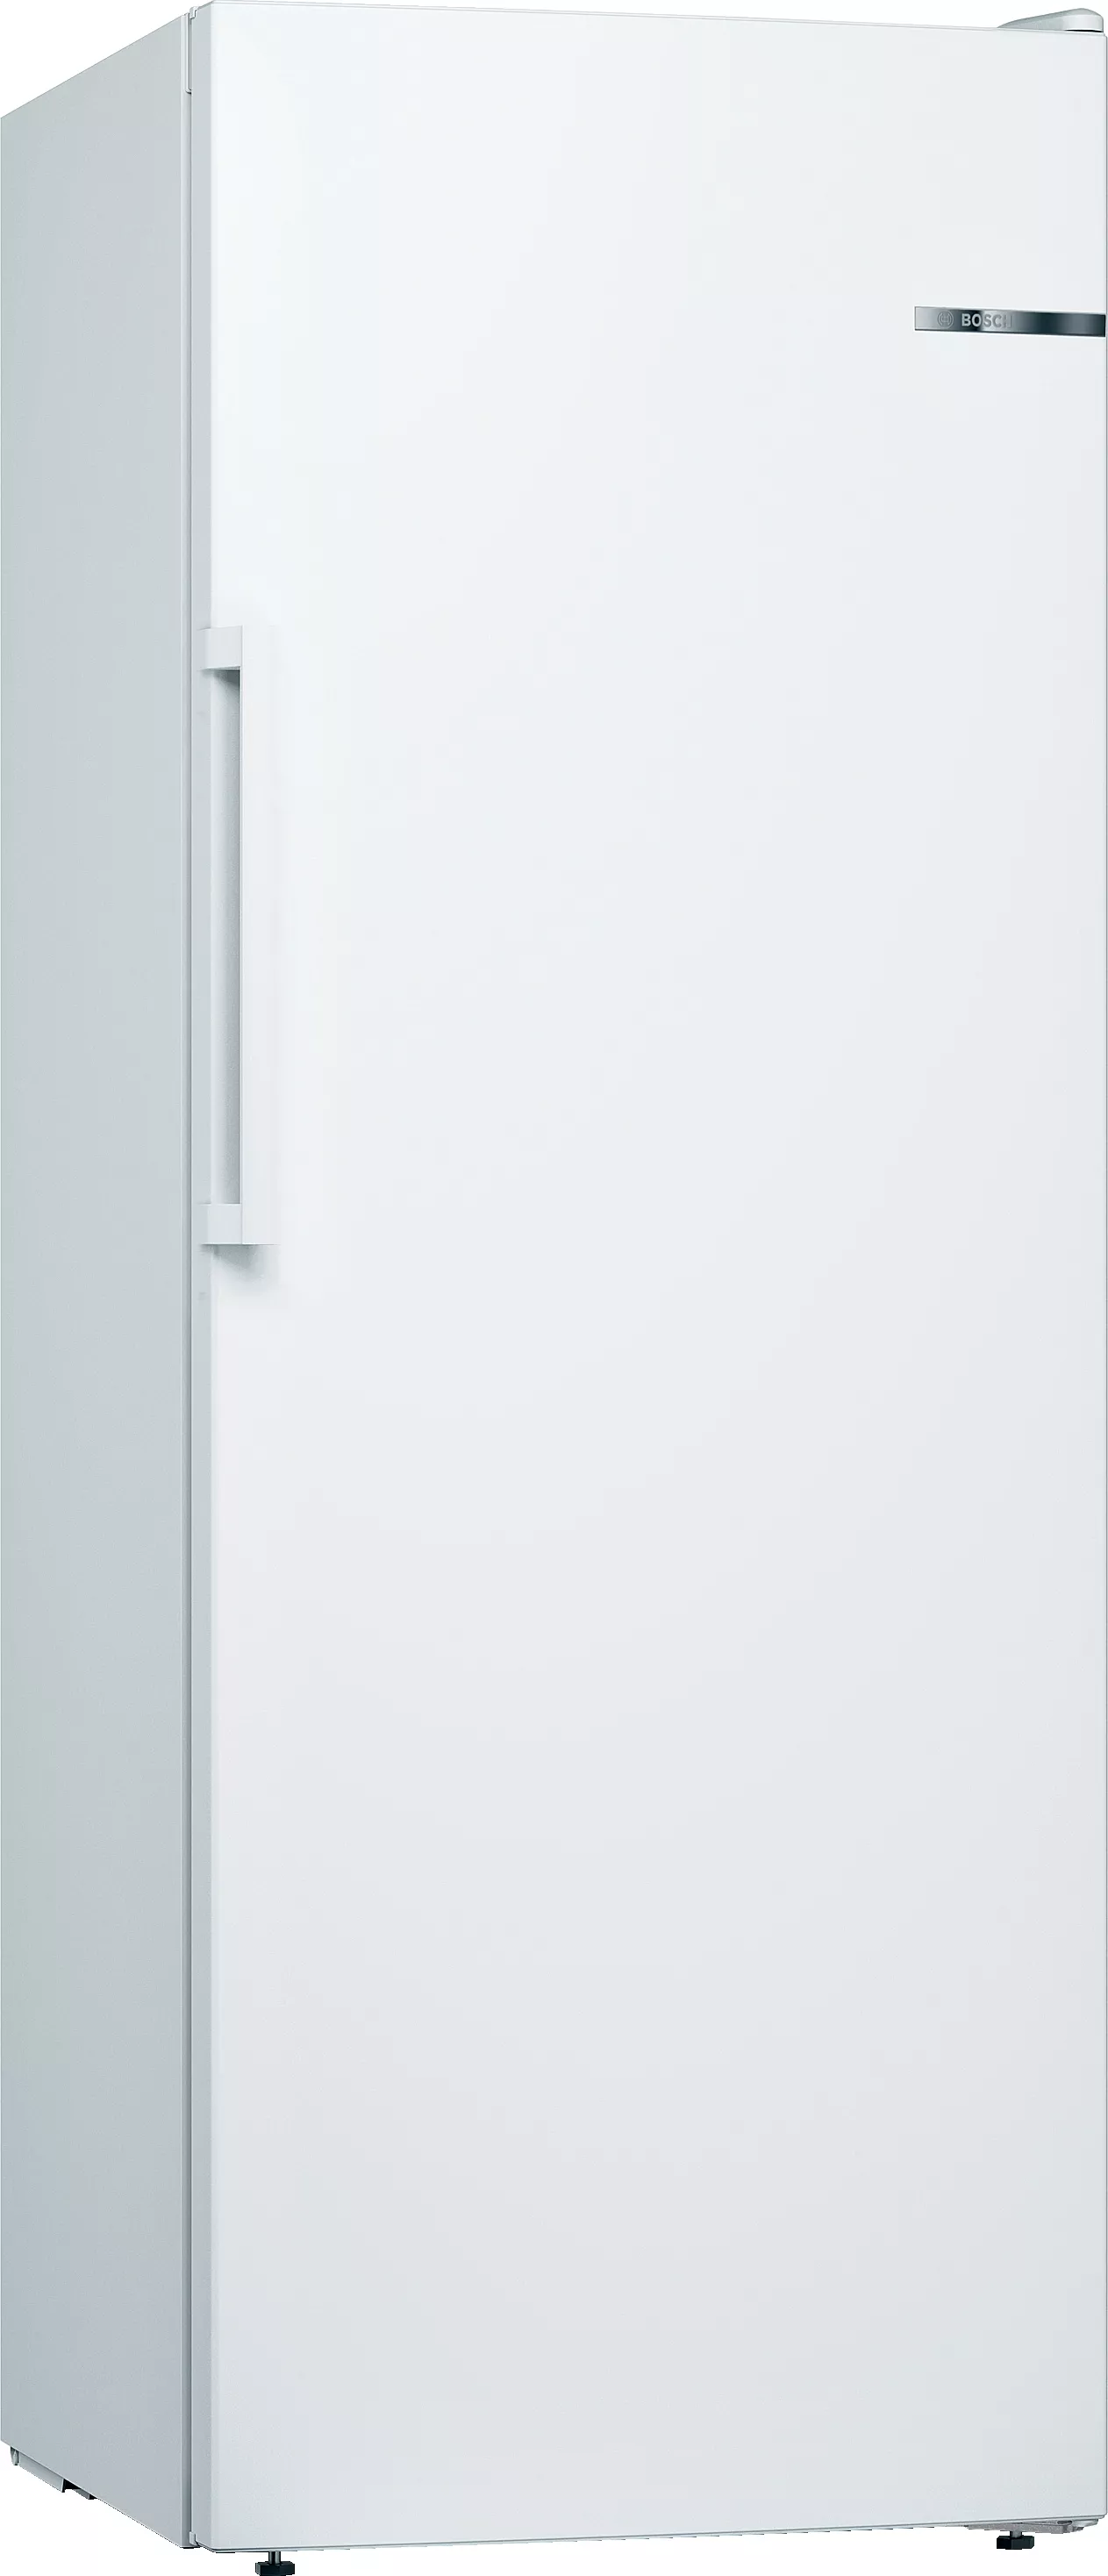 Bosch Serie 4, Freistehender Gefrierschrank, 161 x 60 cm, Weiß, GSN29VWEP